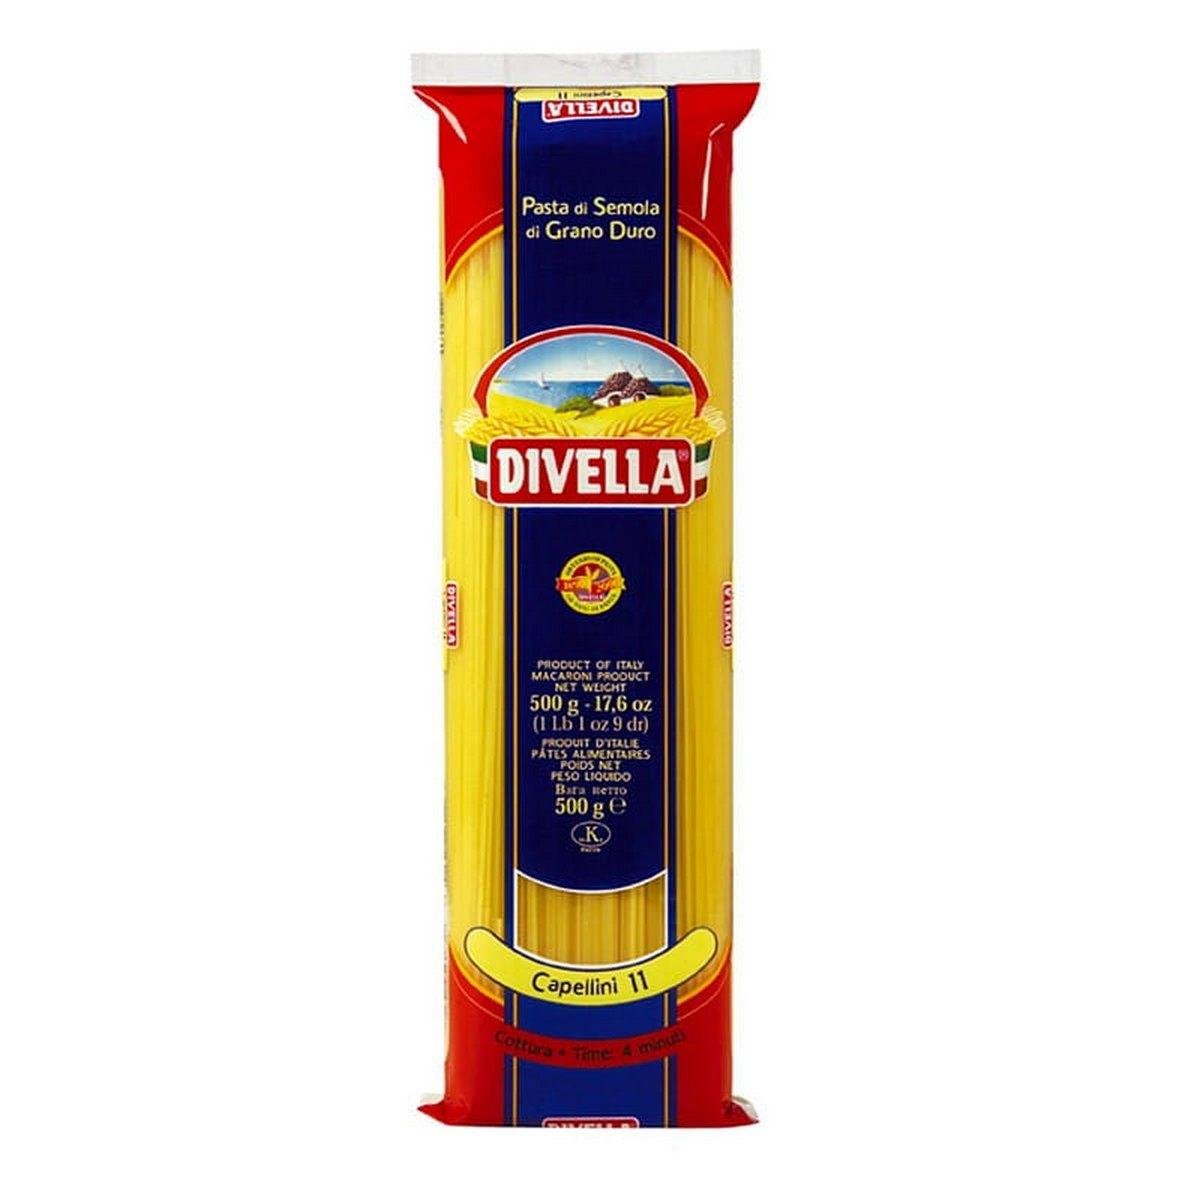 Capellini n°11 Divella